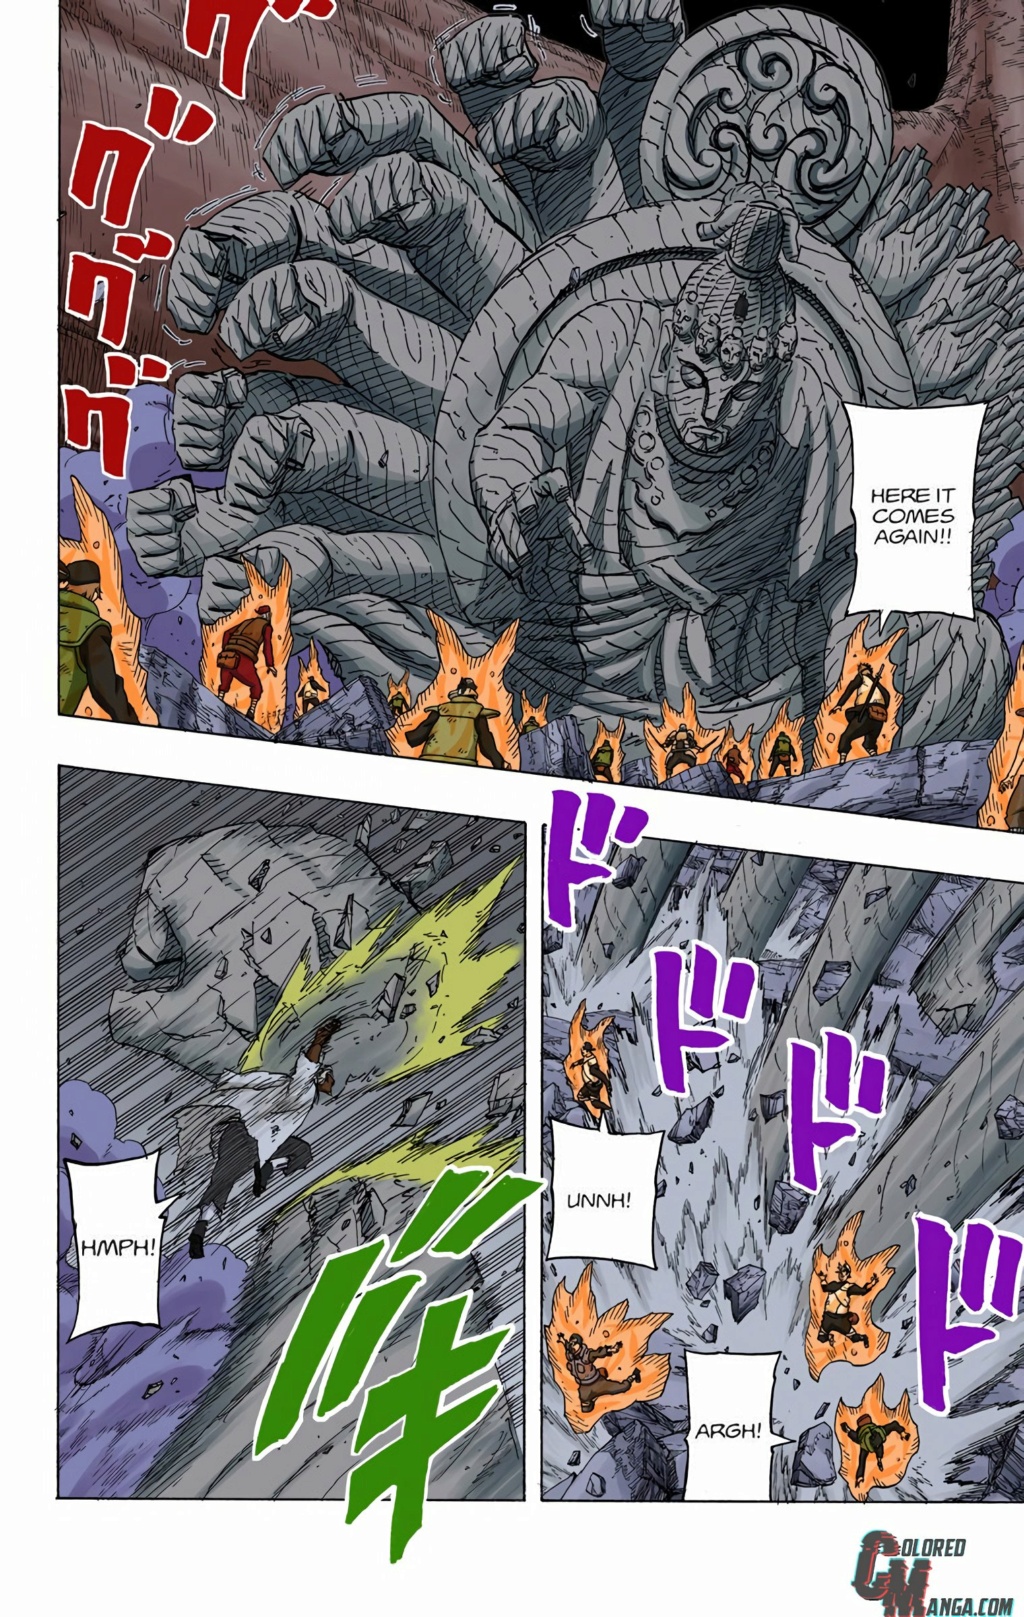 4° Raikage vs Naruto 6 caudas - Página 2 4-otef10